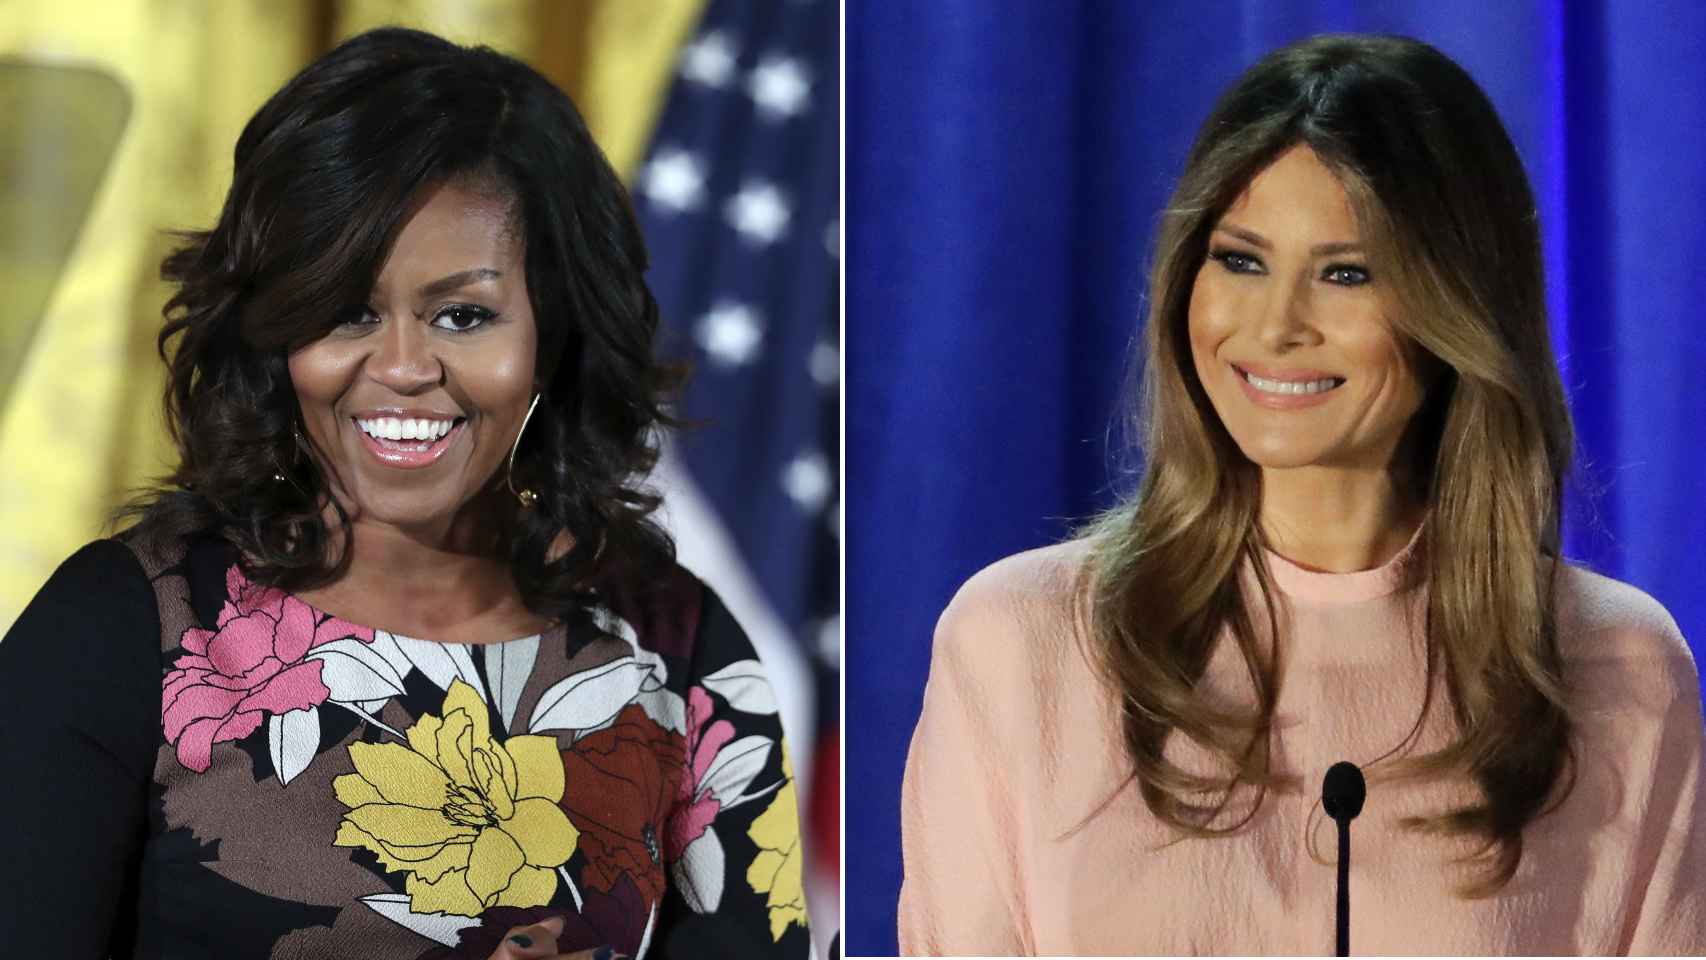 Michelle Obama versus Melania Trump, dos maneras de ver la vida.